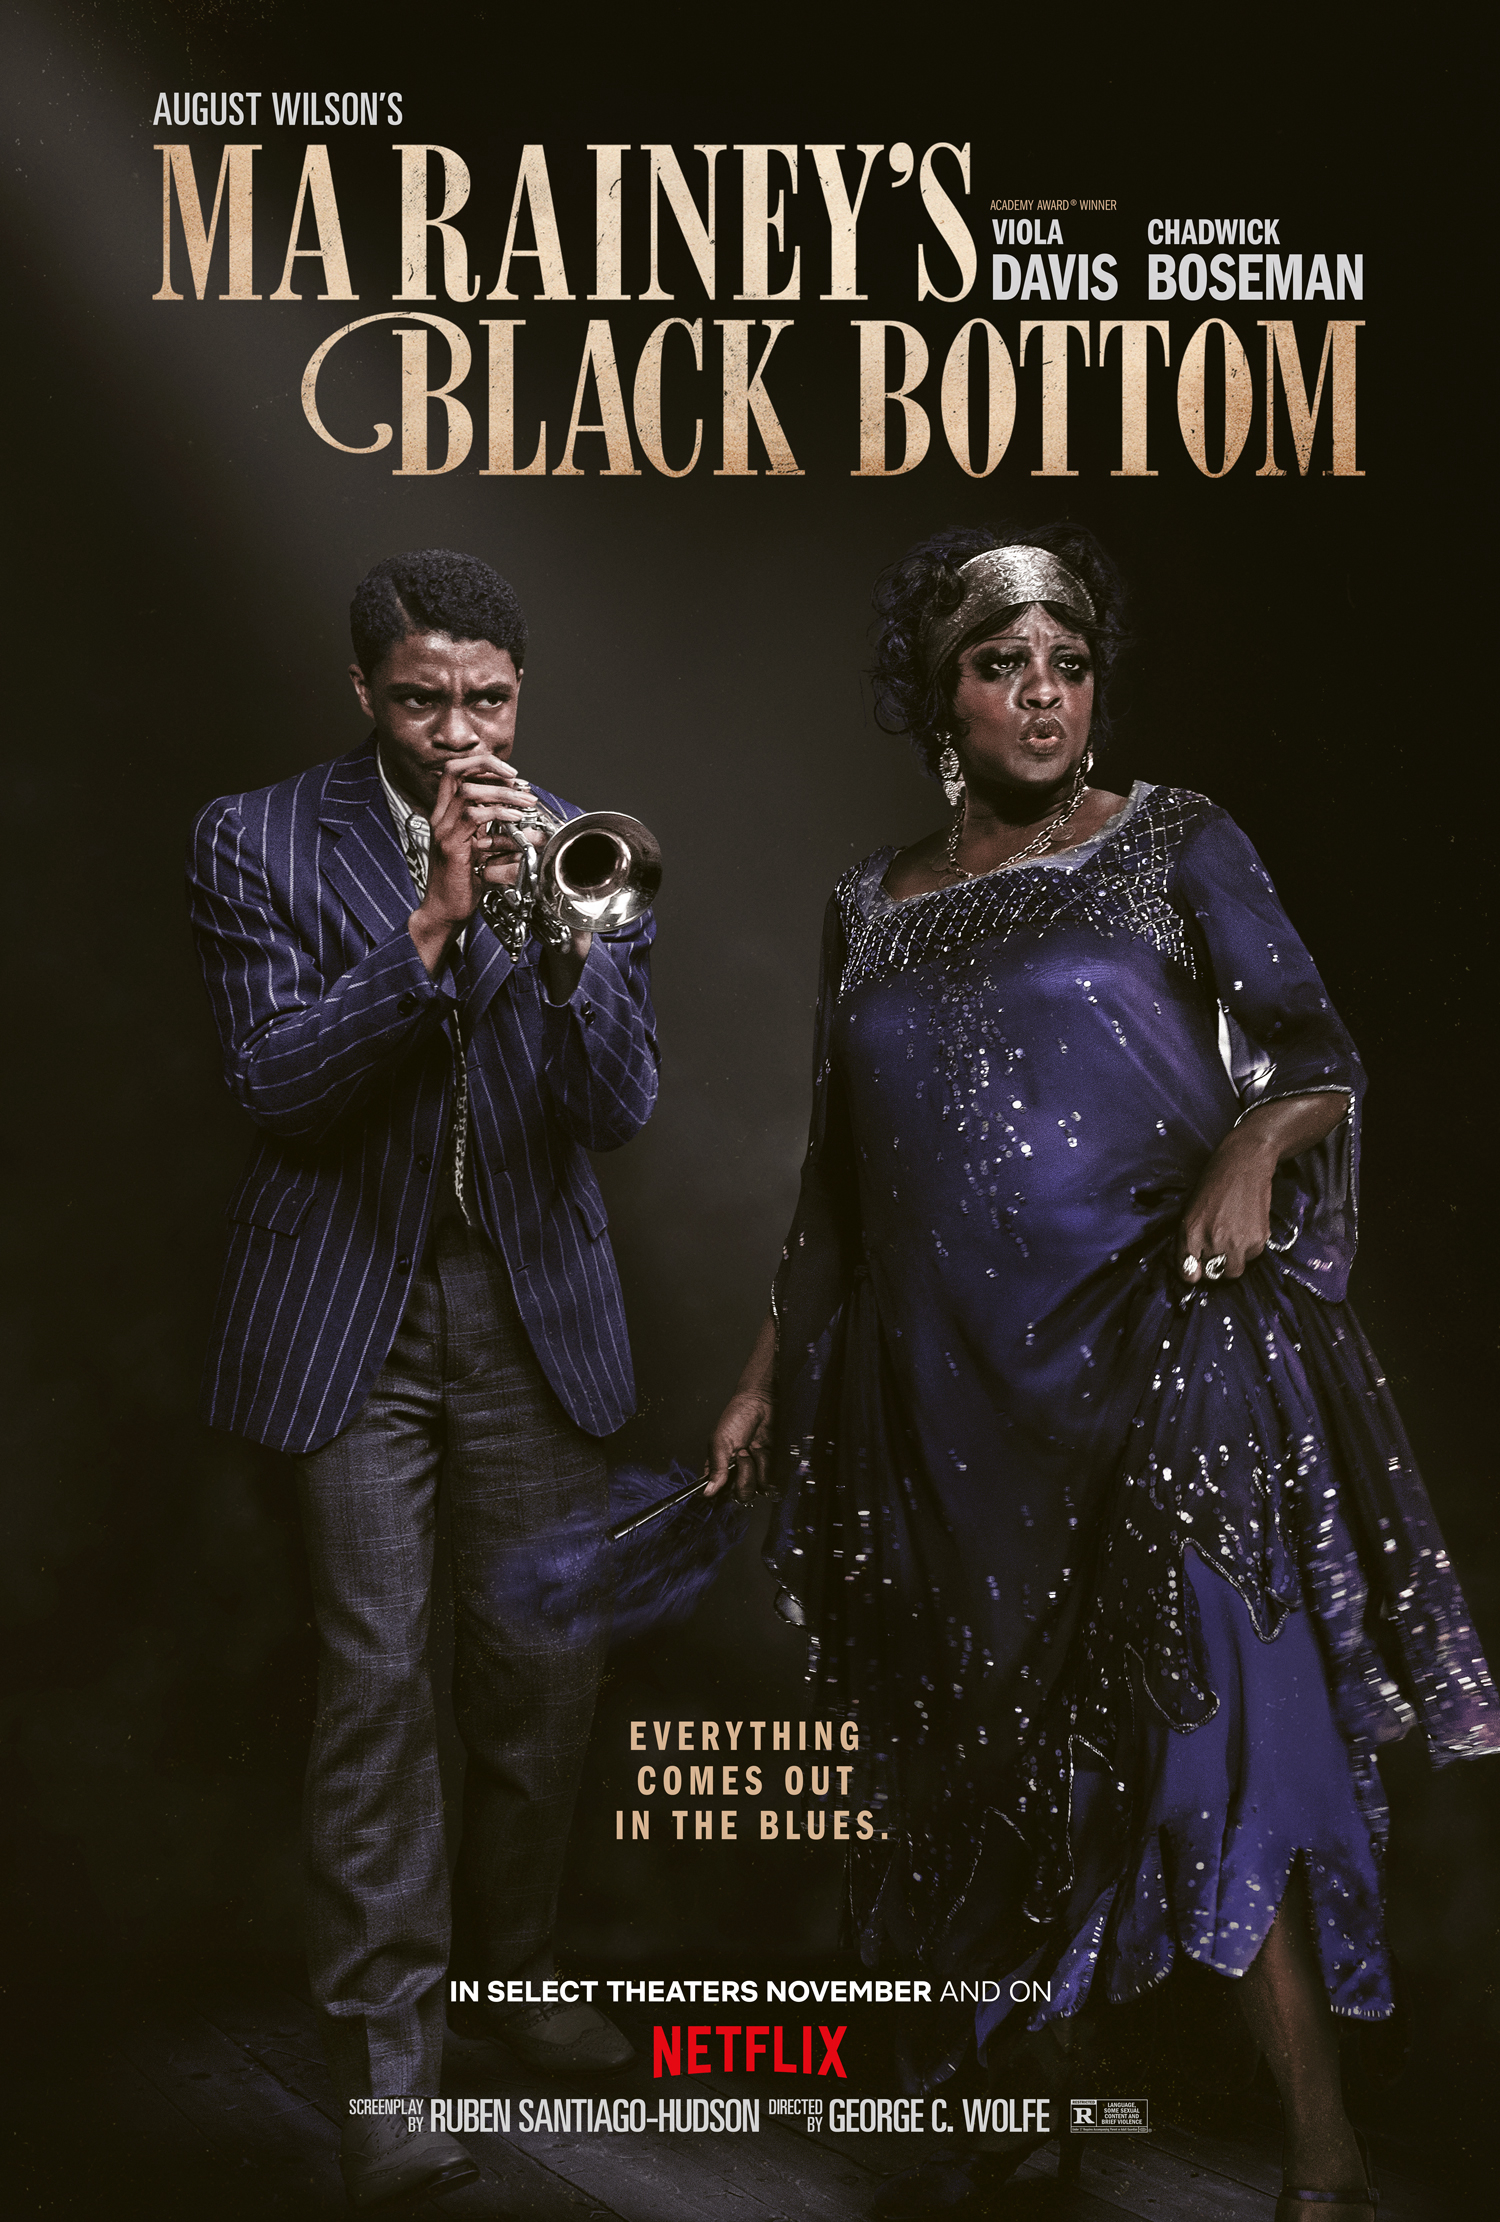 Banner Phim Điệu Blues Của Ma Rainey: Đưa Huyền Thoại Lên Màn Ảnh (Ma Rainey's Black Bottom: A Legacy Brought To Screen)